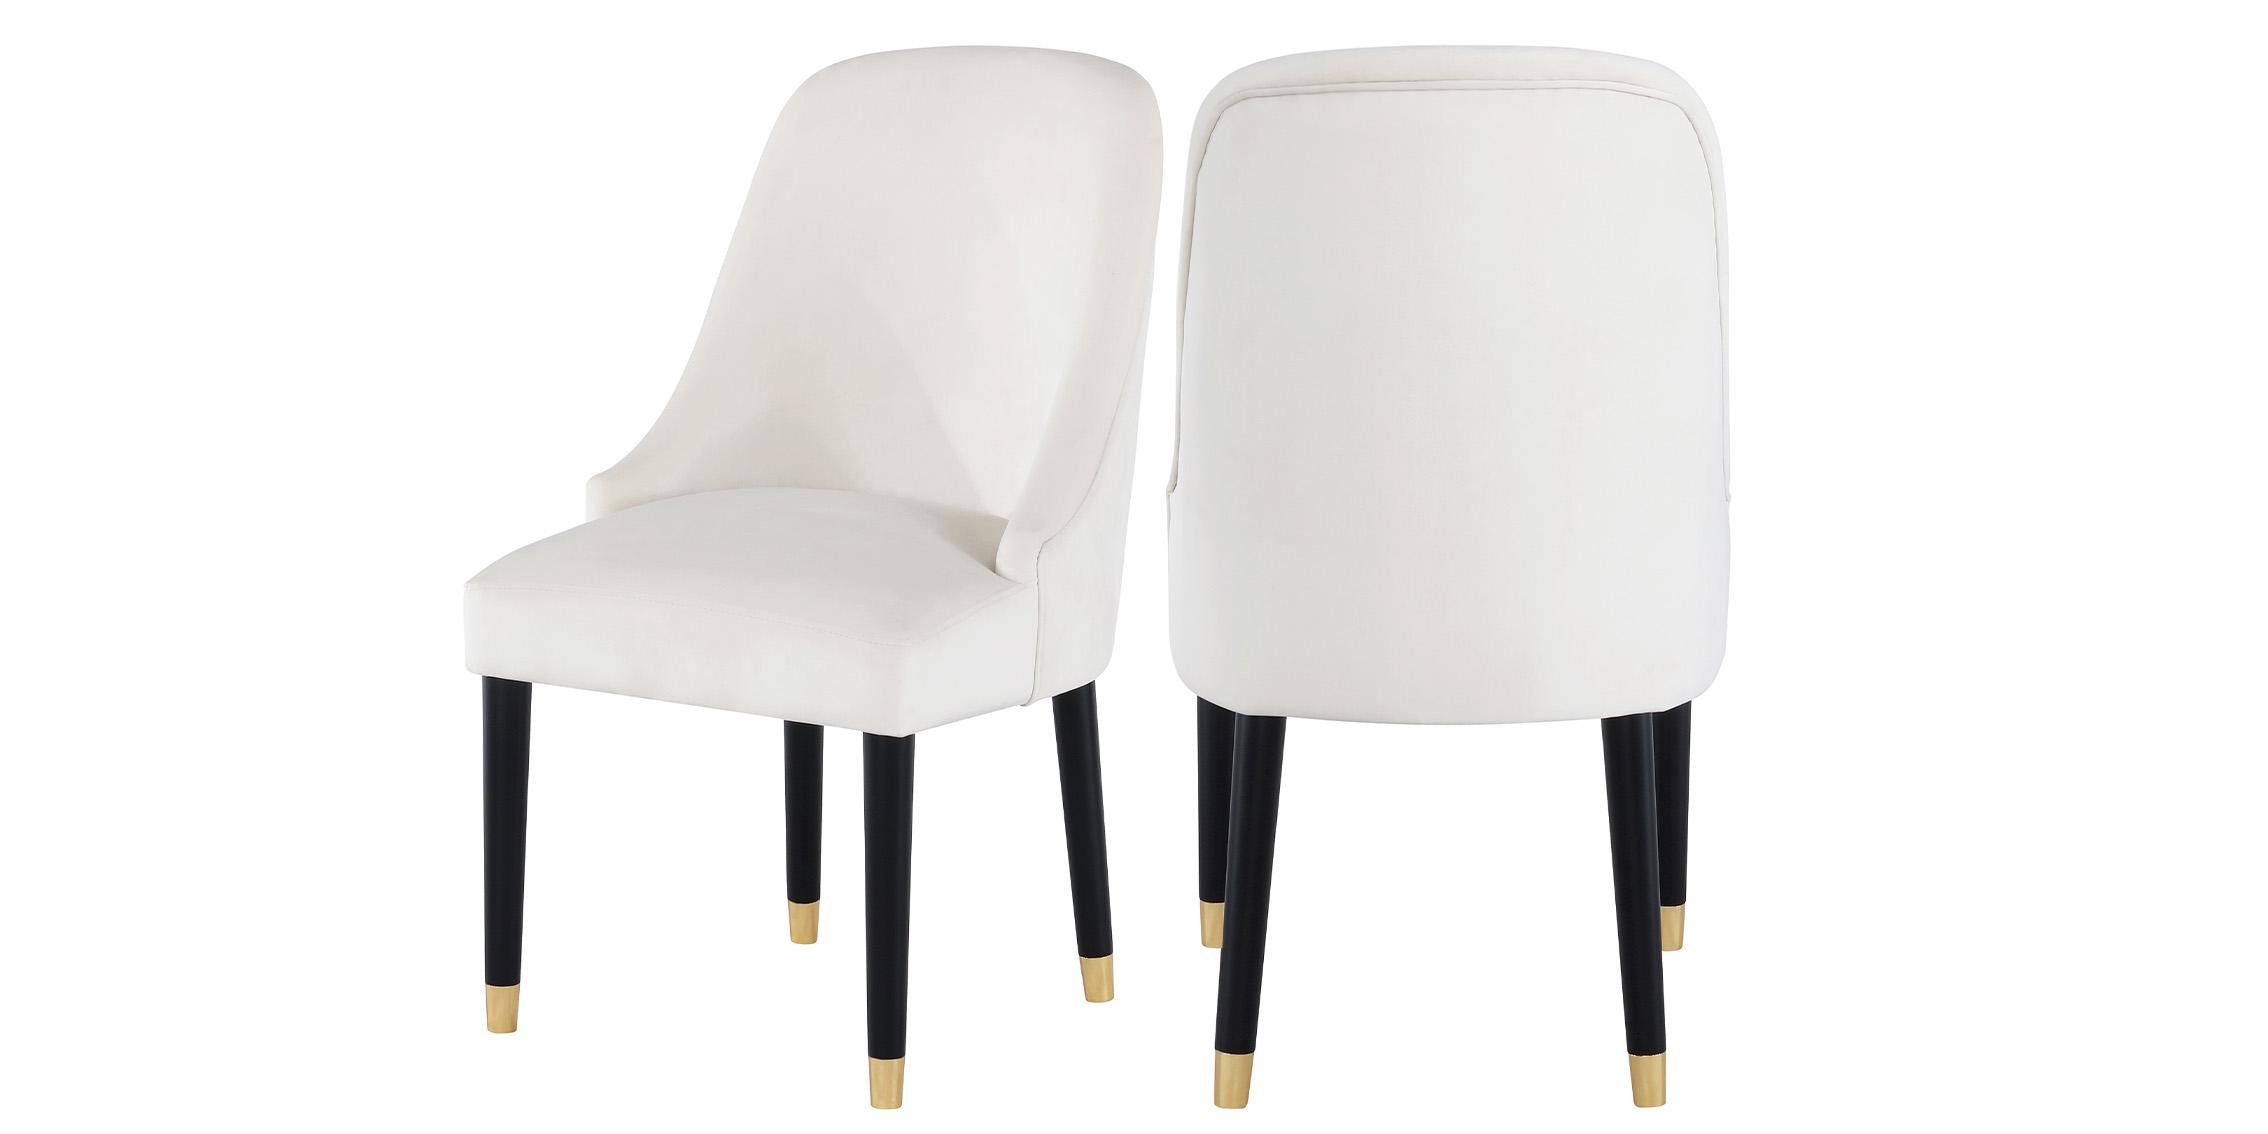 Contemporary, Modern Dining Chair Set OMNI 923Cream-C 923Cream-C in Cream Velvet